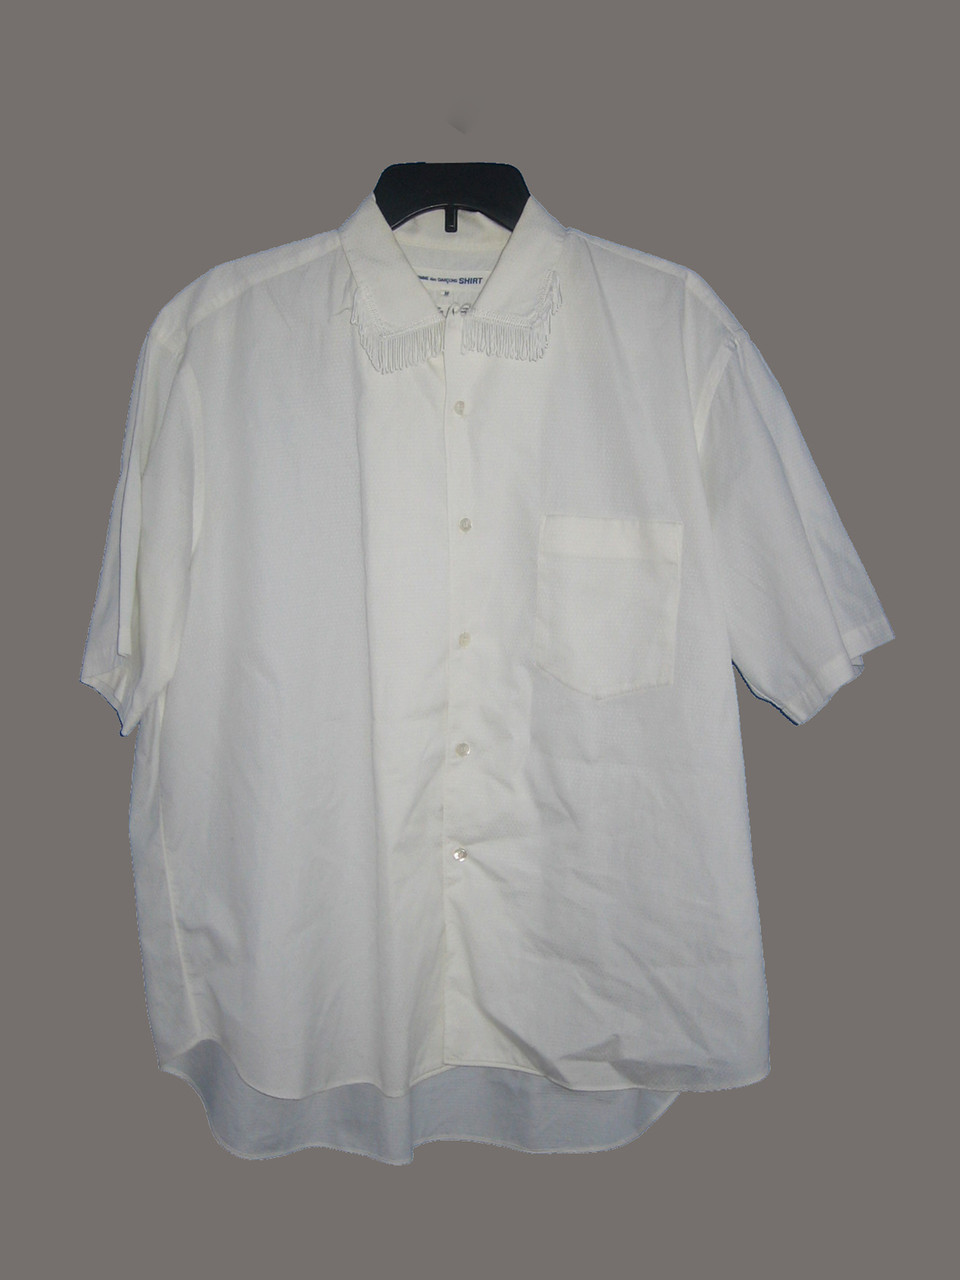 Vintage Commes Des Garcon White Shirt at Anvintro